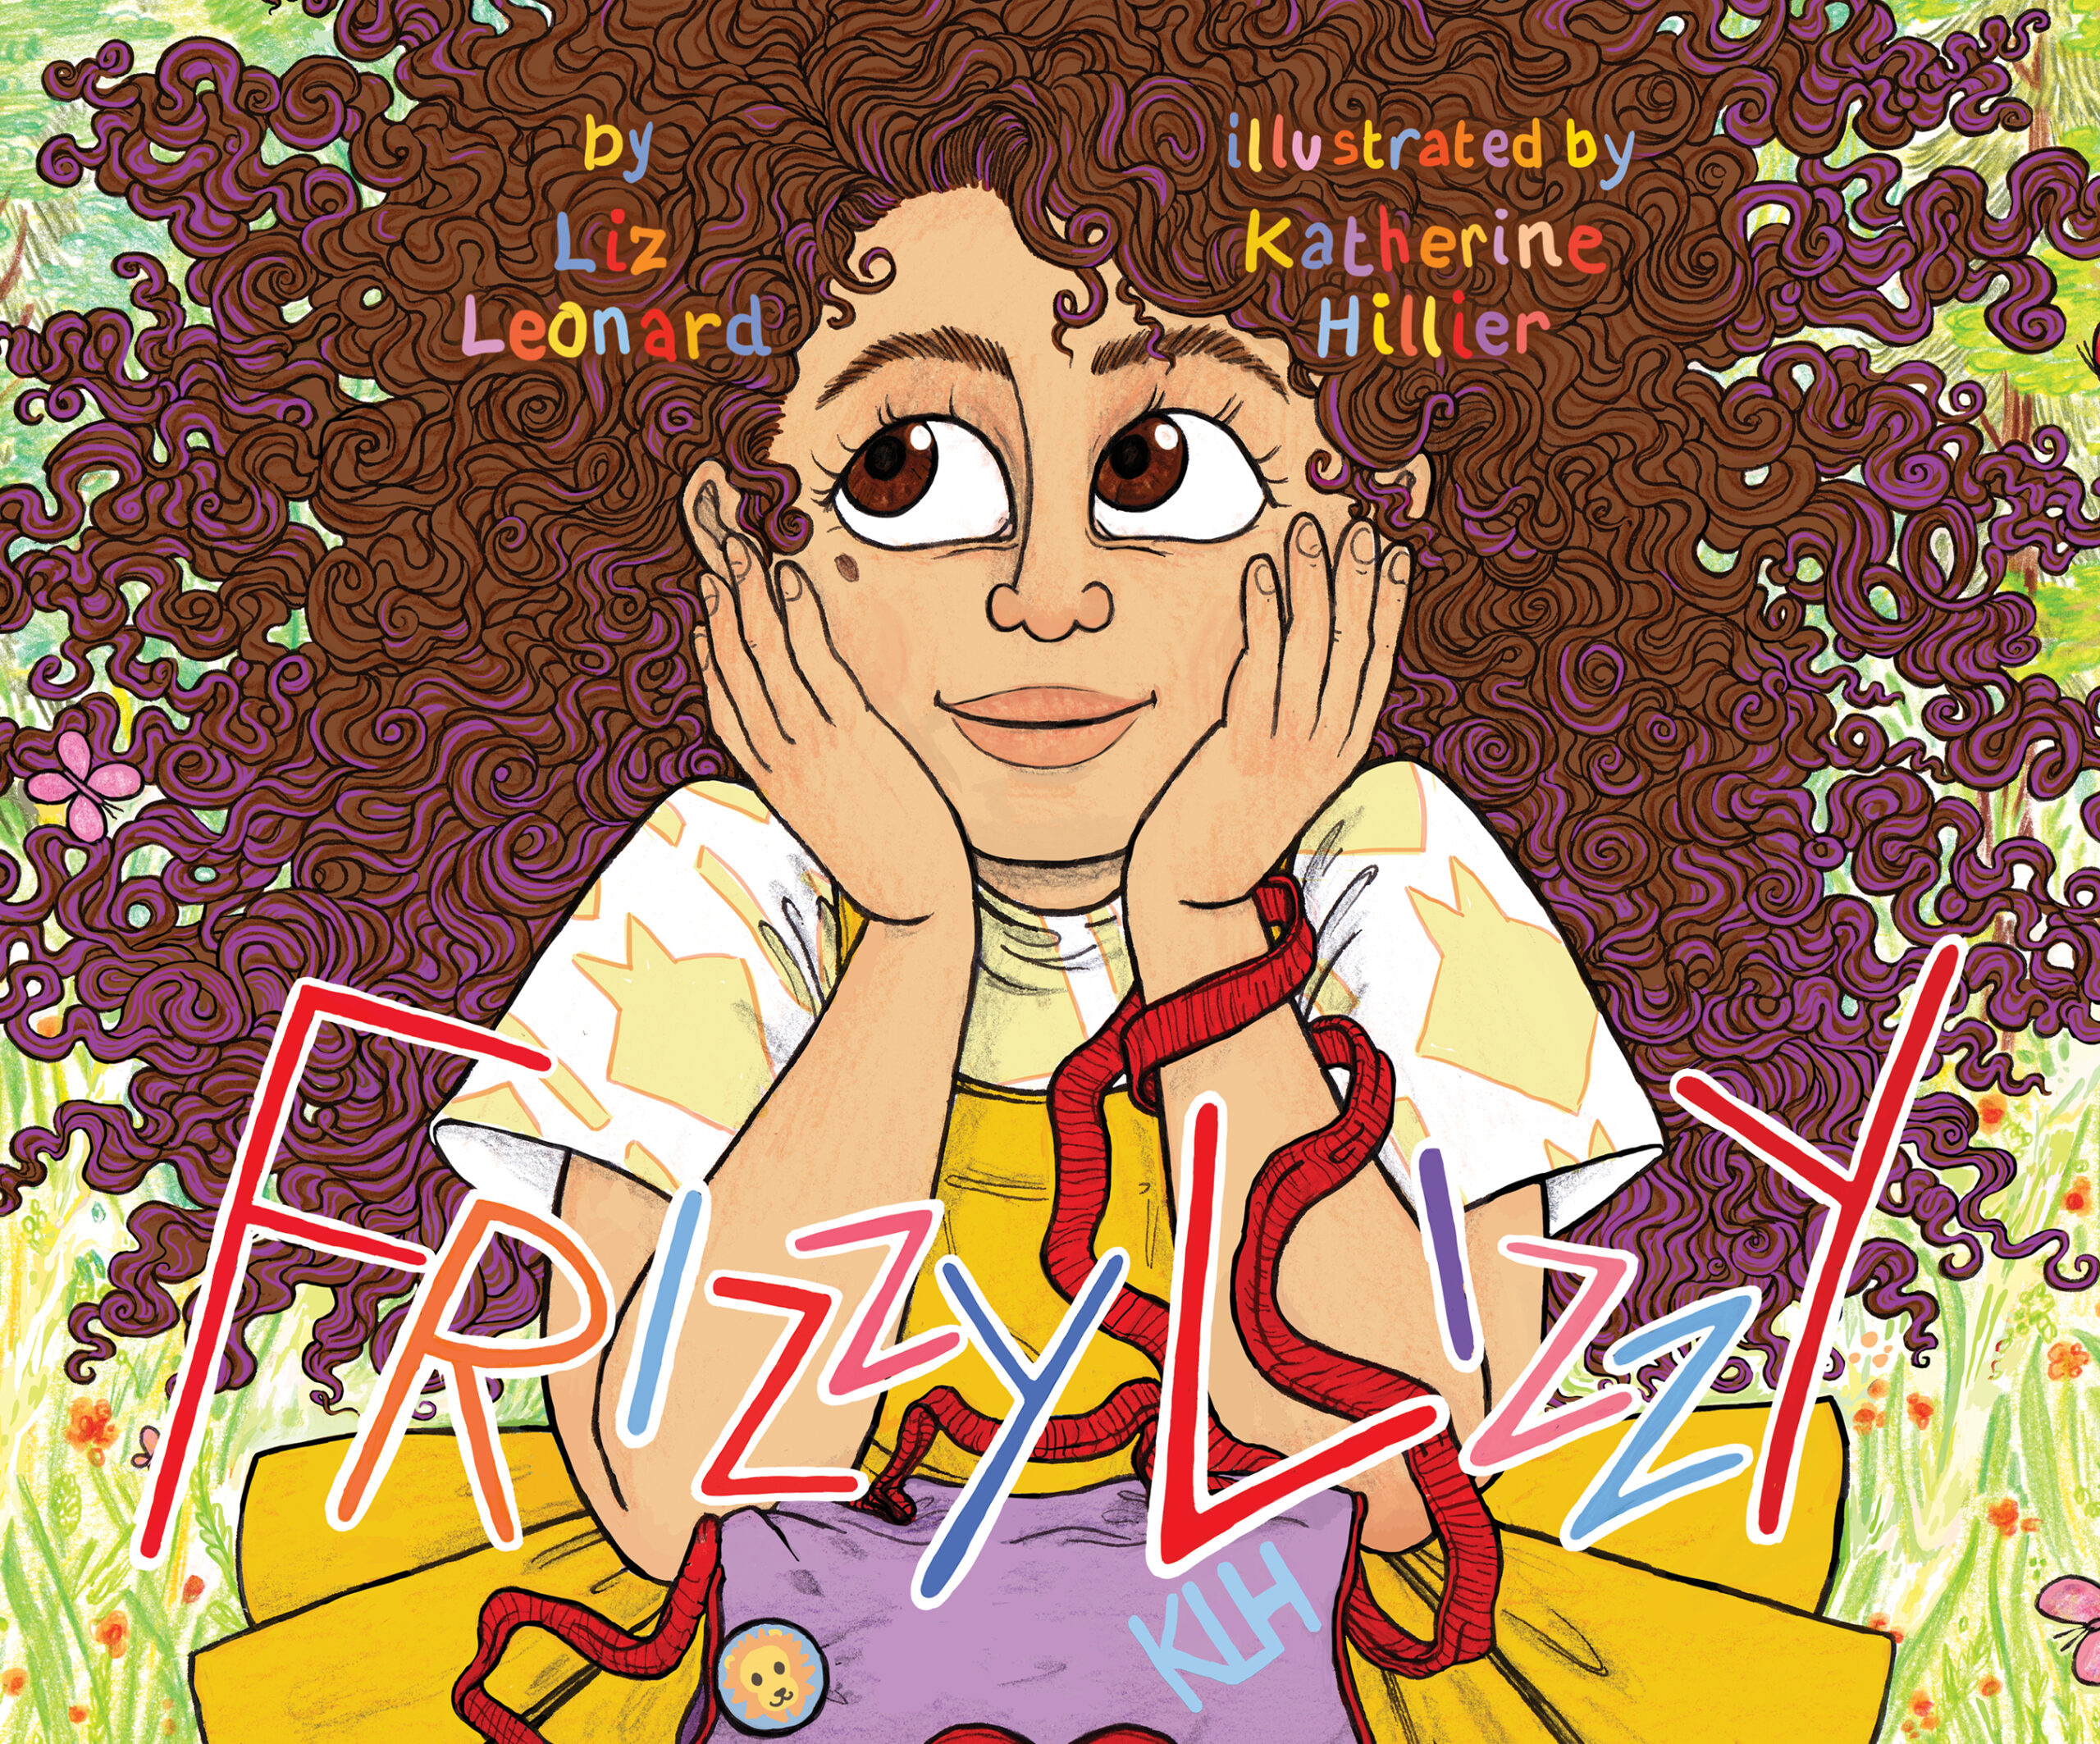 Frizzy Lizzy by Liz Leonard